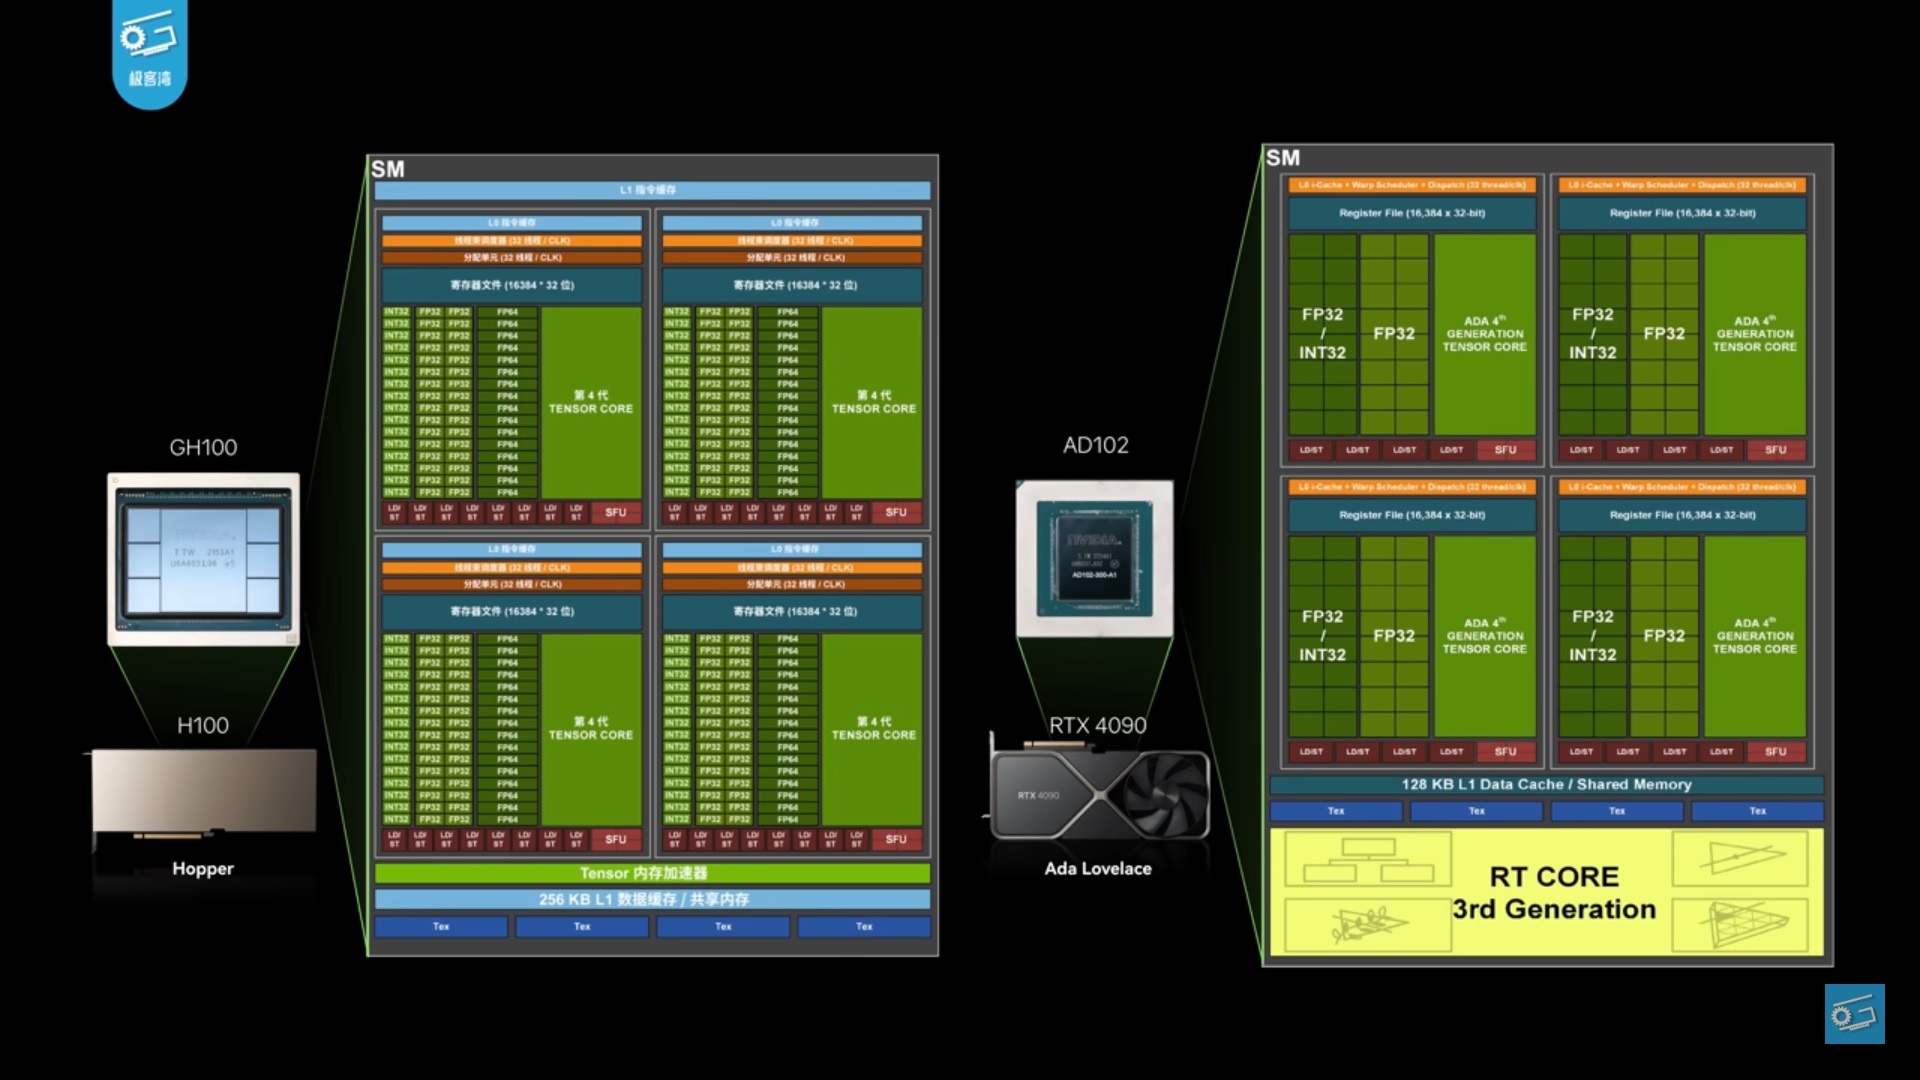 Comparação entre a arquitetura das GPUs H100 e AD102.